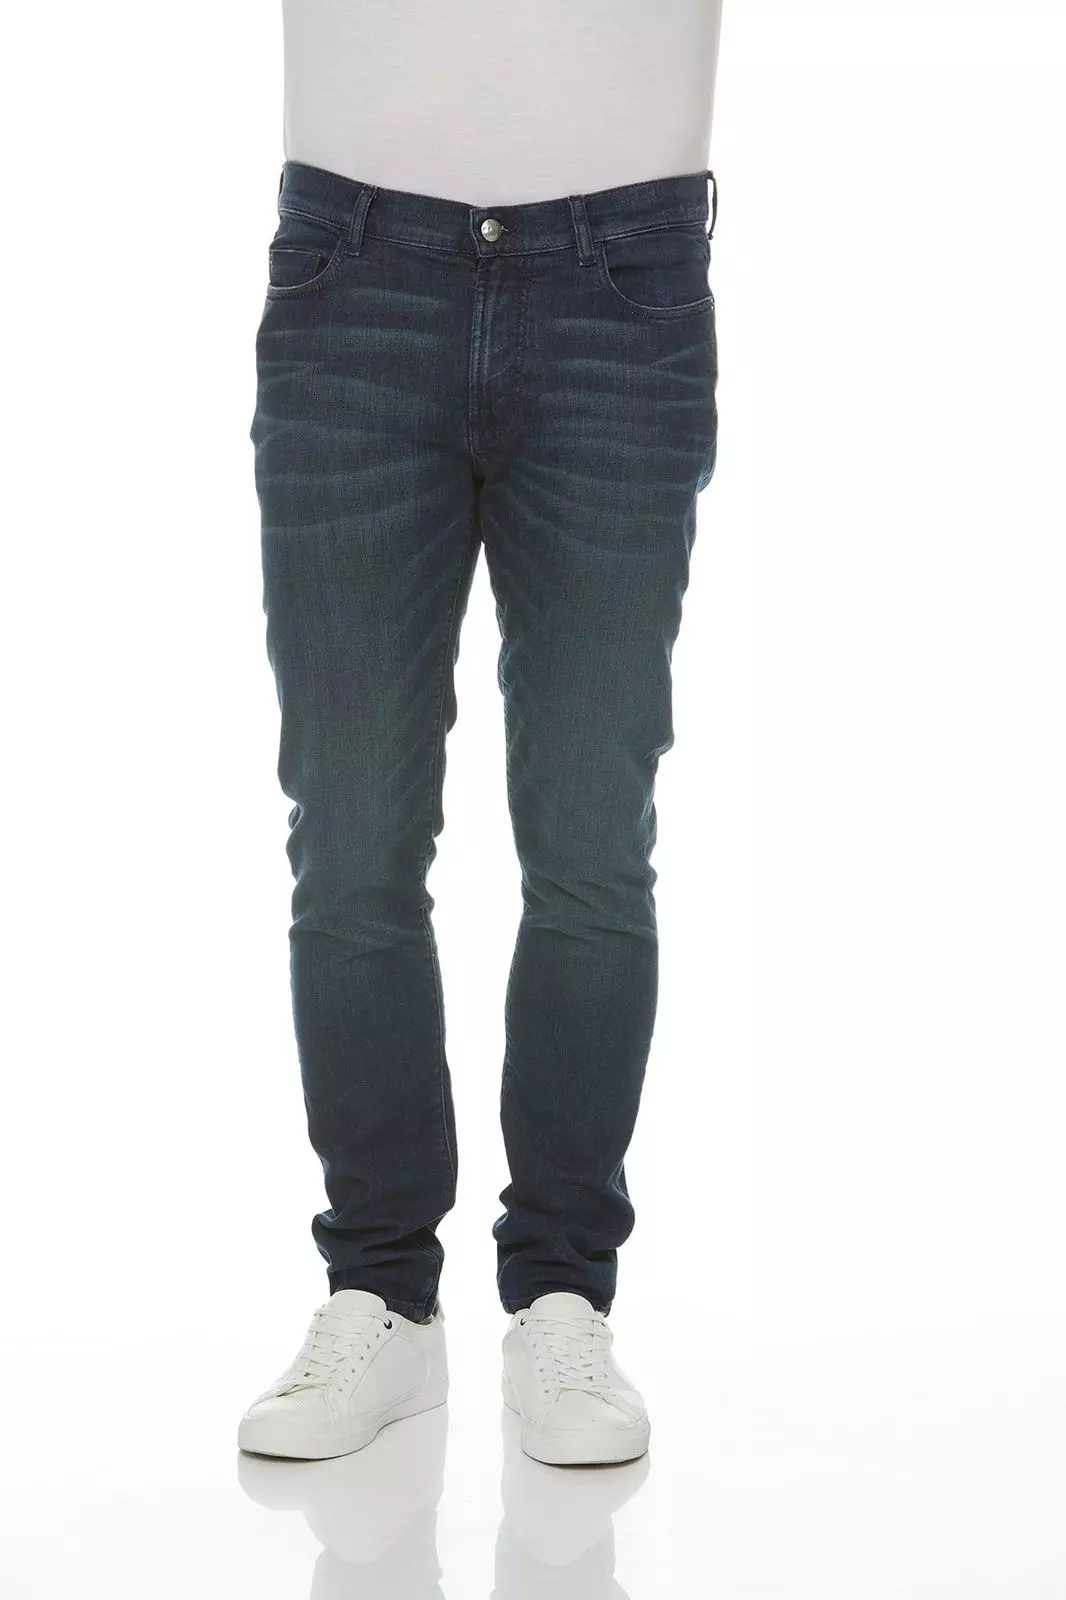 Jeans Modell: Steve slim high flex